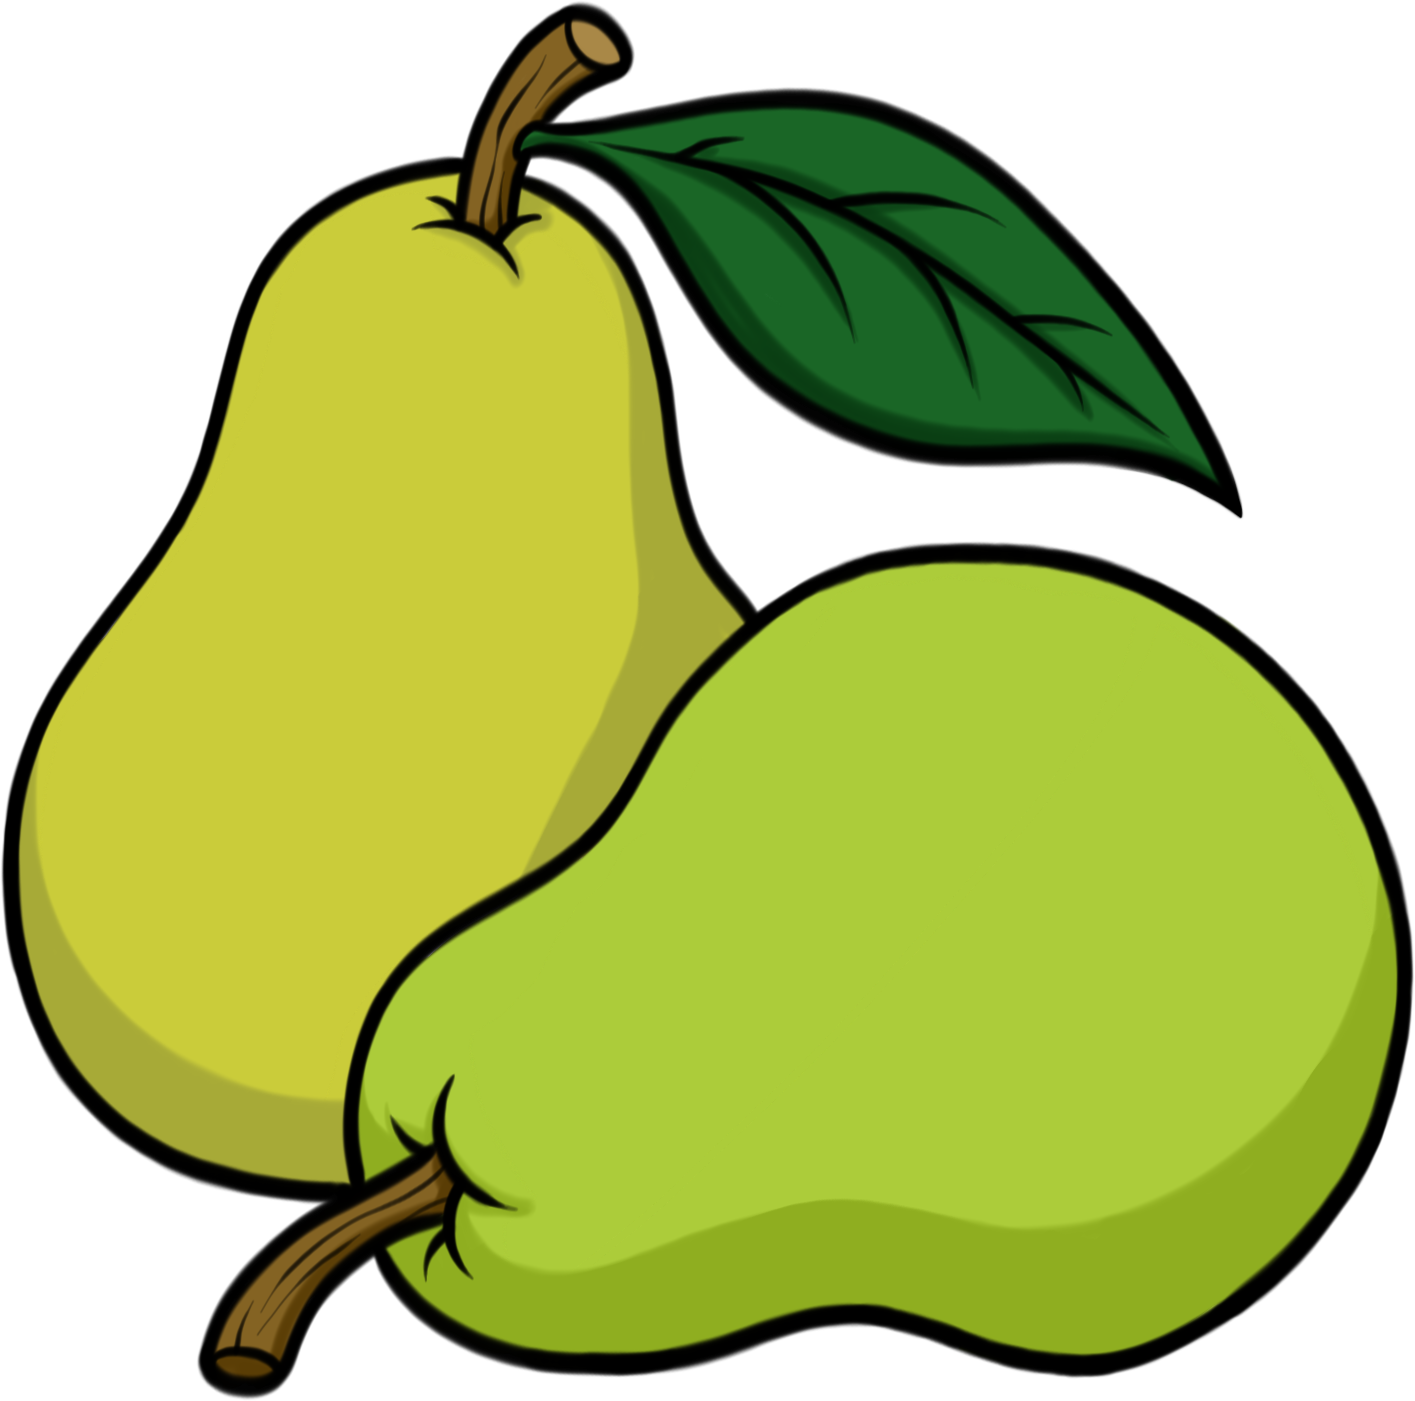 Pears - Pear Draw (1415x1401)